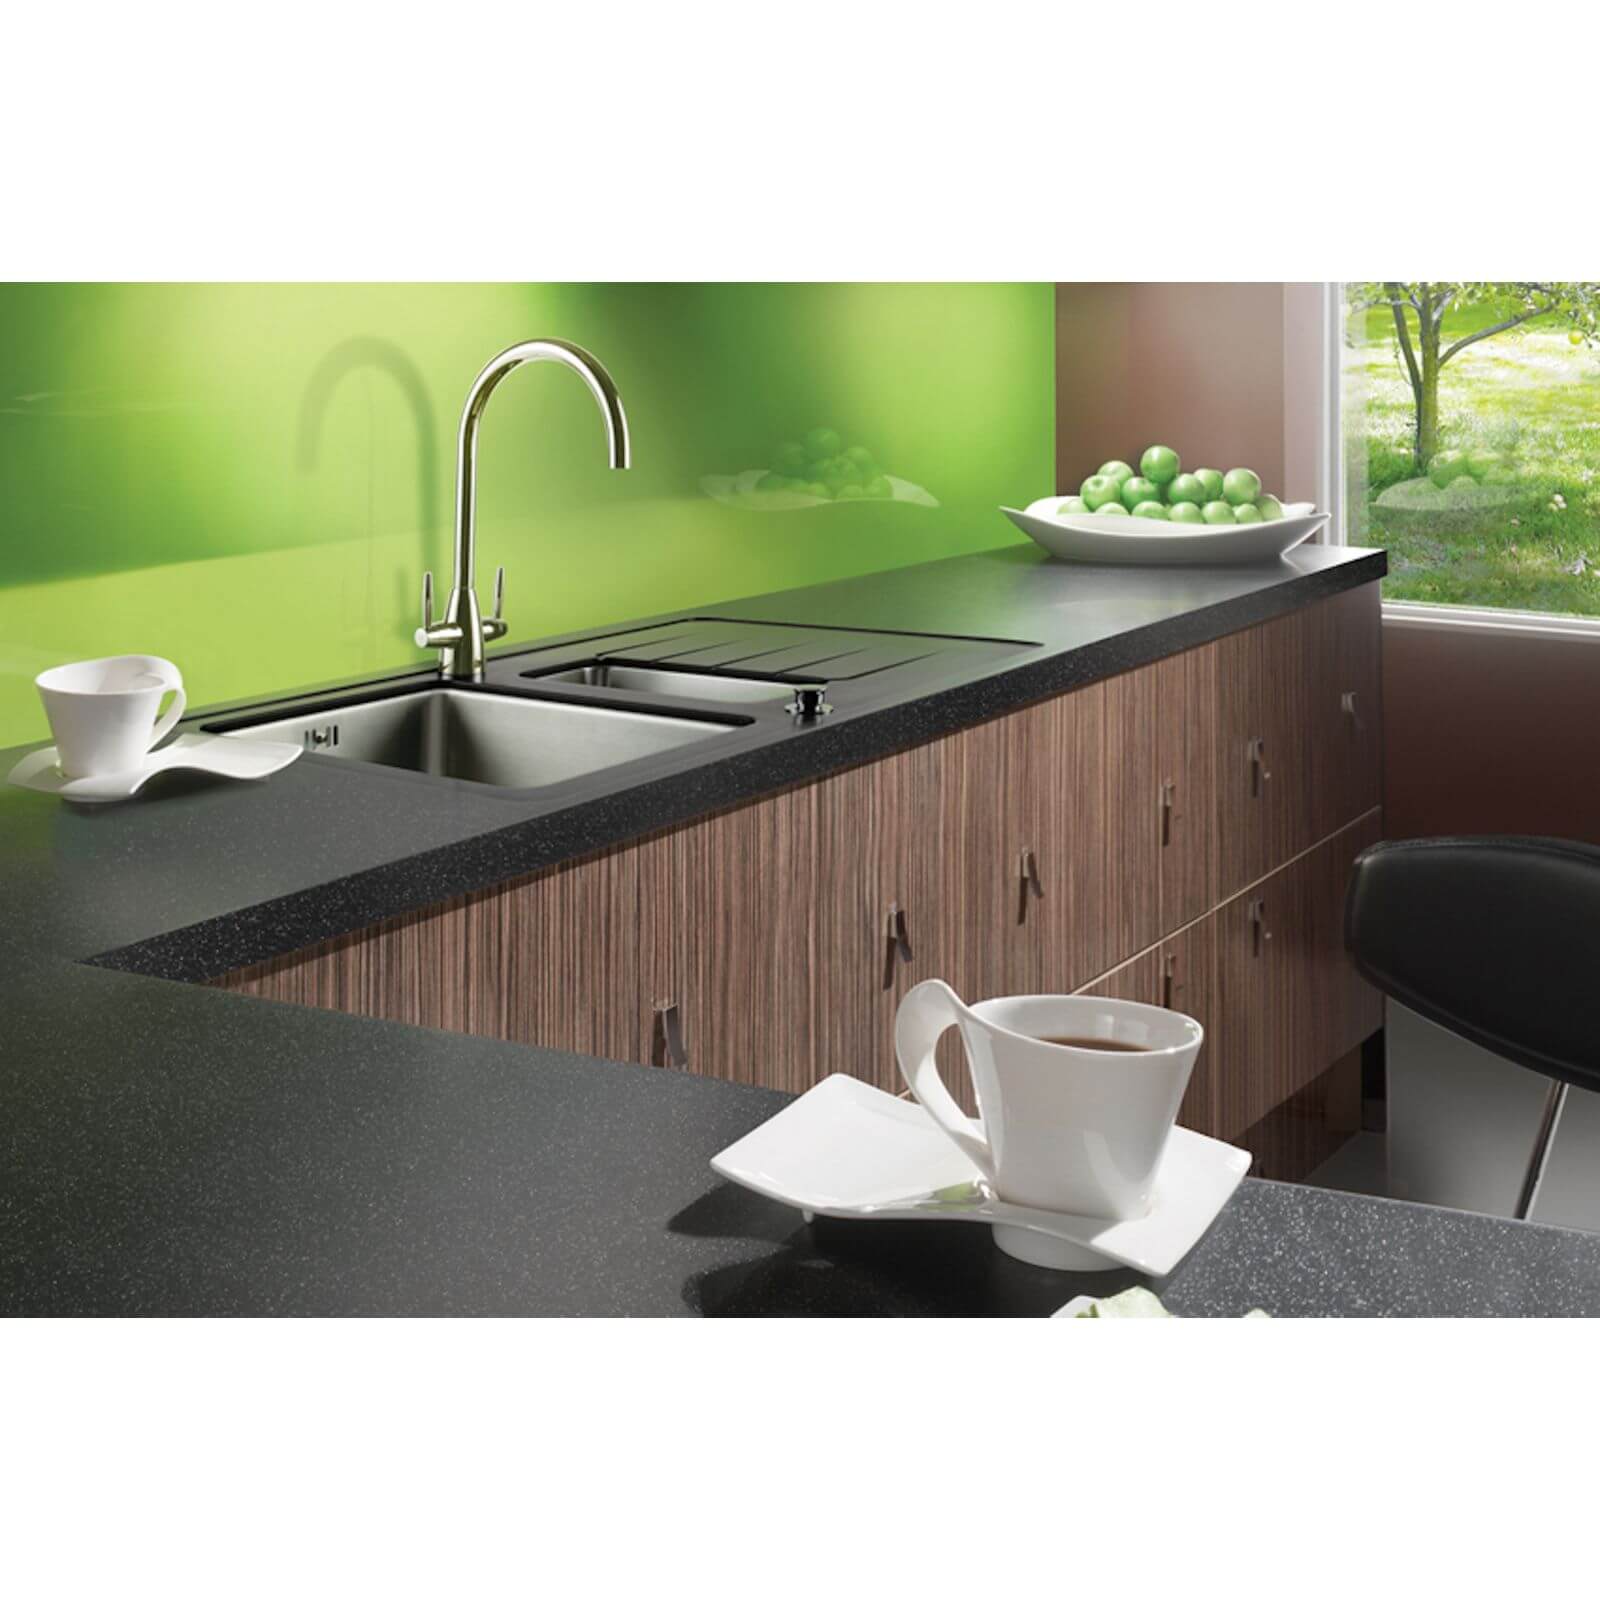 Maia Galaxy Kitchen Worktop R235 - 60 x 60 x 4.2cm